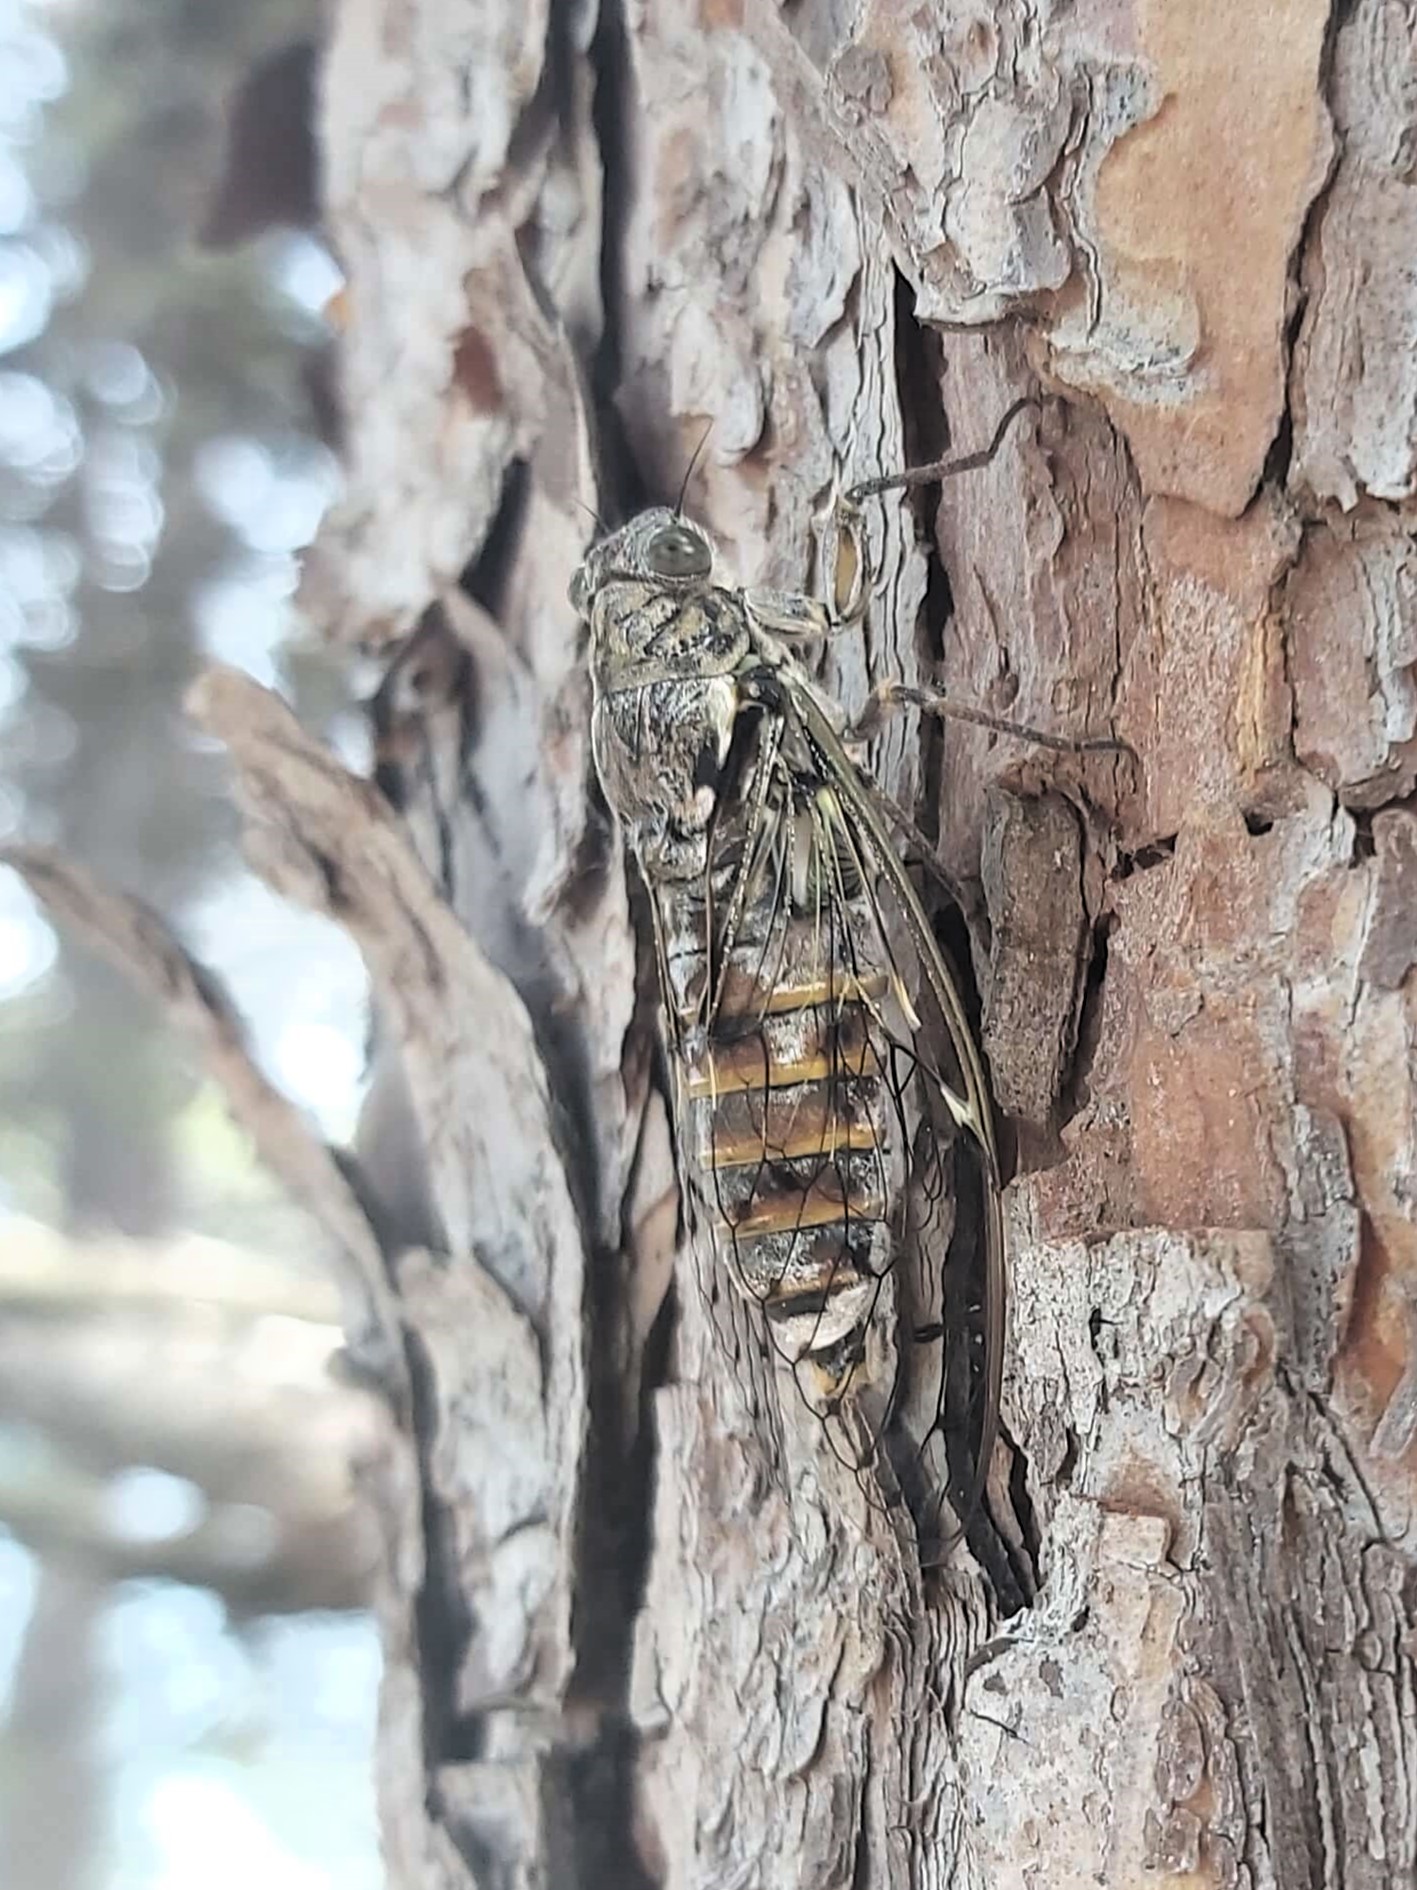 A cicada on a tree, Pula, Croatia